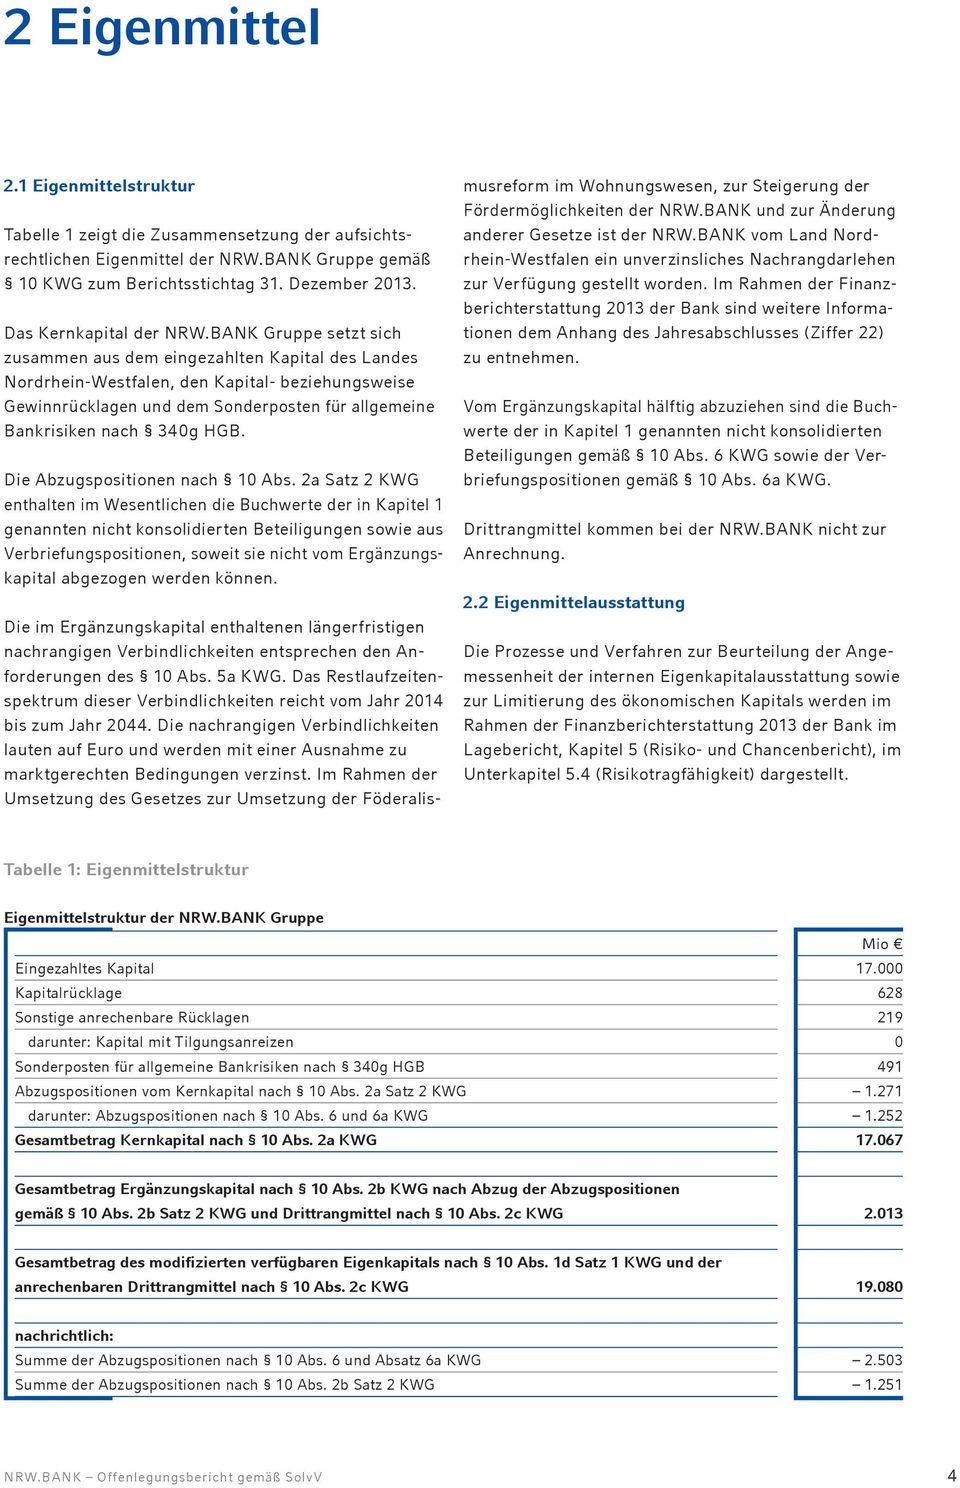 BANK Gruppe setzt sich zusammen aus dem eingezahlten Kapital des Landes Nordrhein-Westfalen, den Kapital- beziehungsweise Gewinnrücklagen und dem Sonderposten für allgemeine Bankrisiken nach 340g HGB.